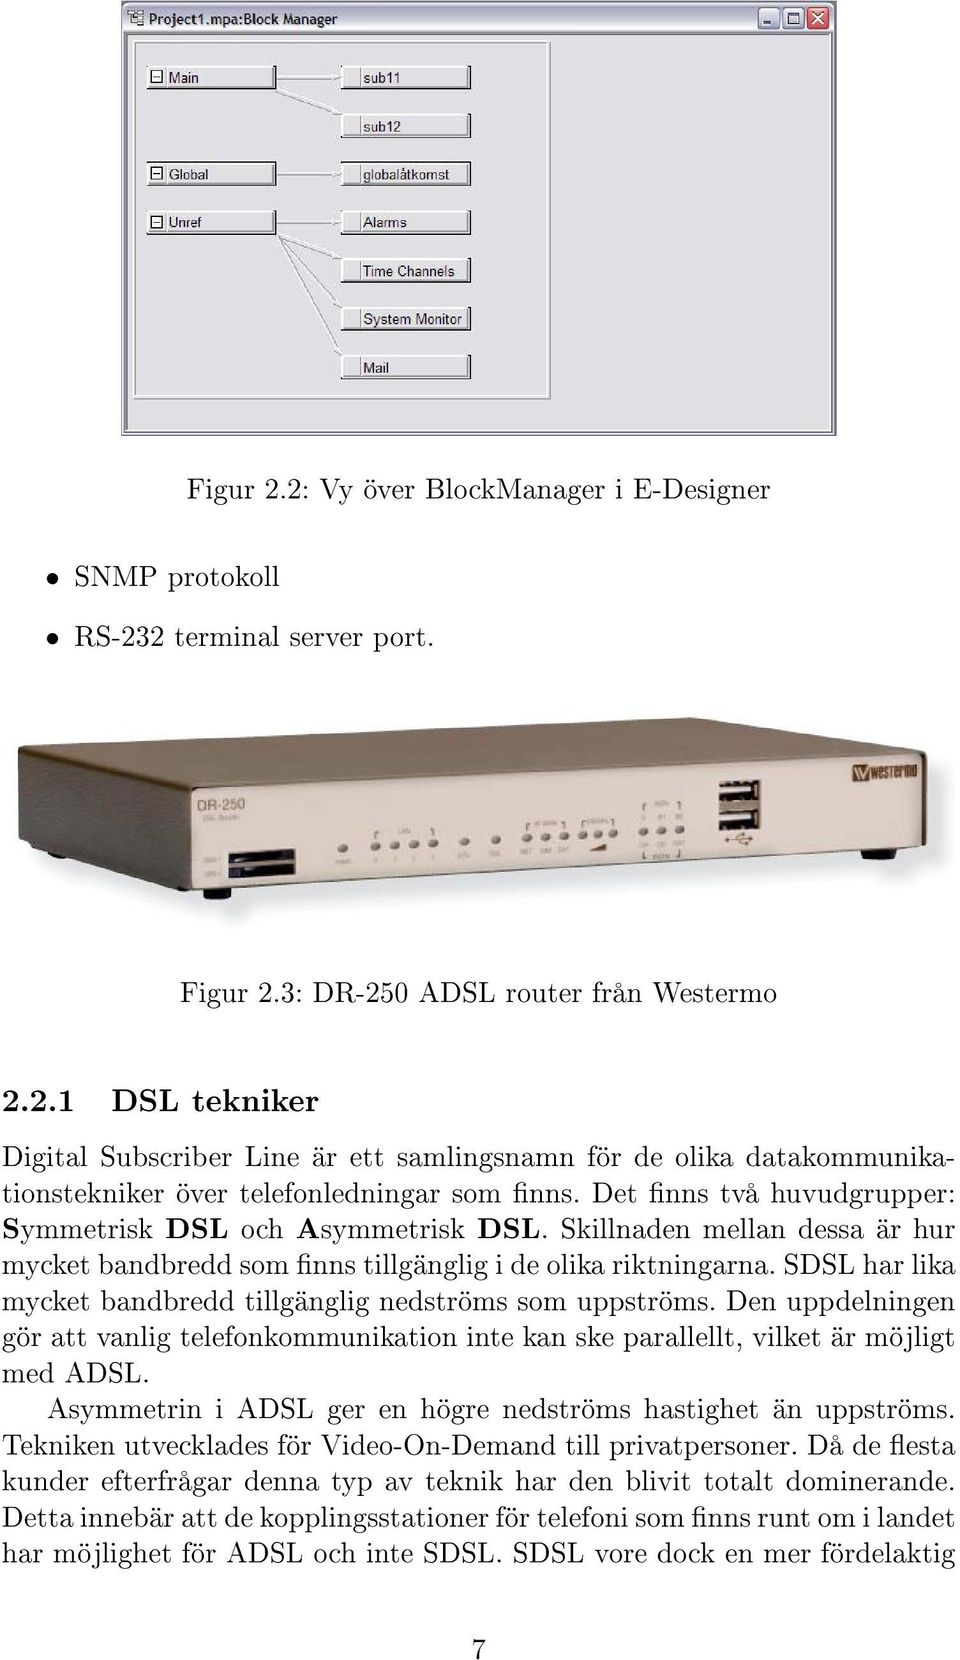 SDSL har lika mycket bandbredd tillgänglig nedströms som uppströms. Den uppdelningen gör att vanlig telefonkommunikation inte kan ske parallellt, vilket är möjligt med ADSL.